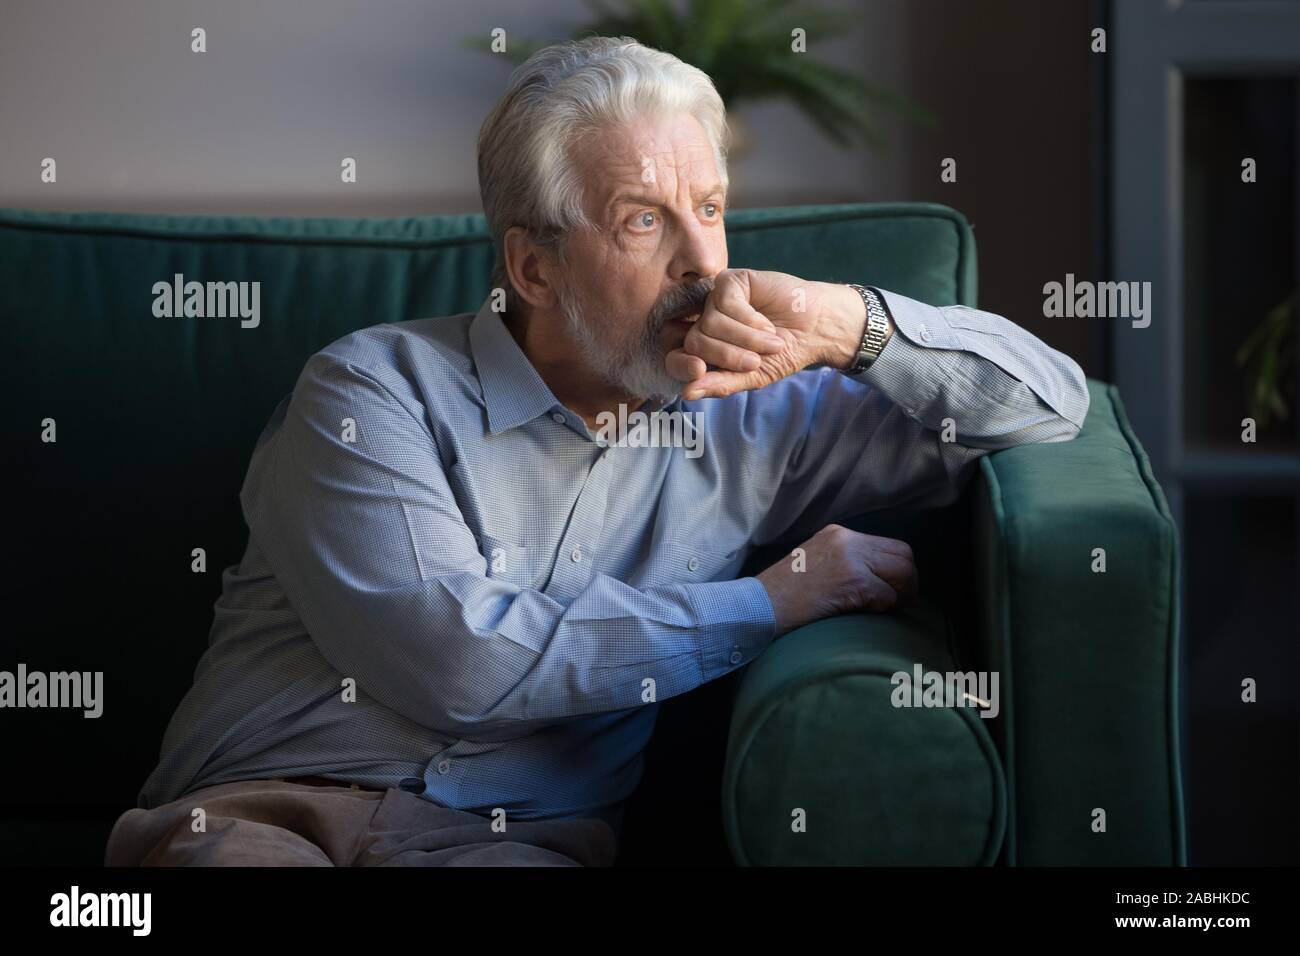 Des personnes âgées homme assis seul sur table sur des Pensées perdues Banque D'Images